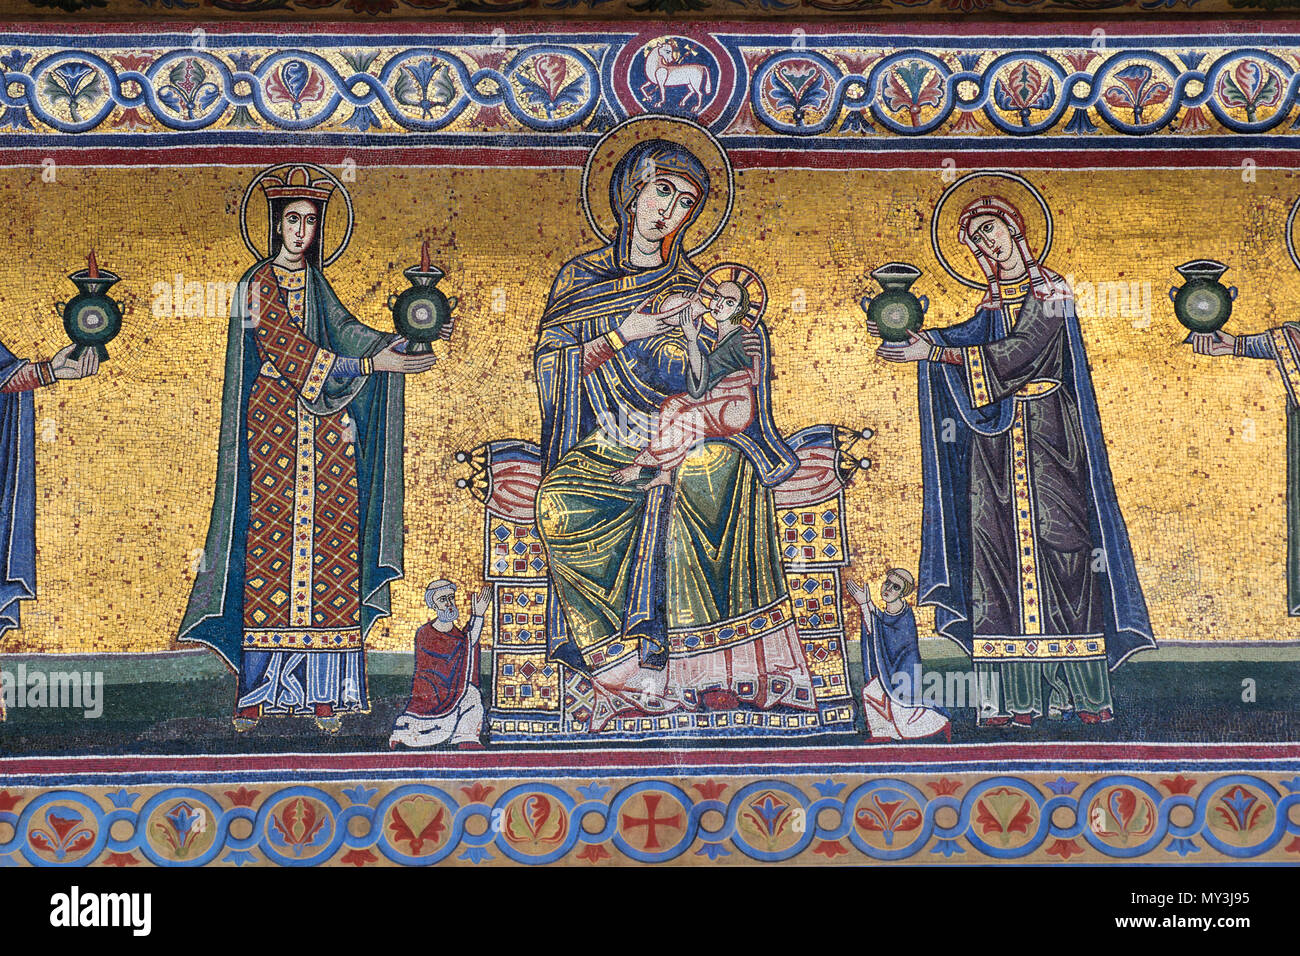 La Madonna che allatta con il Bambino e i saggi e le vergini stolte - dettaglio del mosaico medievale - Basilica di Santa Maria in Trastevere, Roma Foto Stock